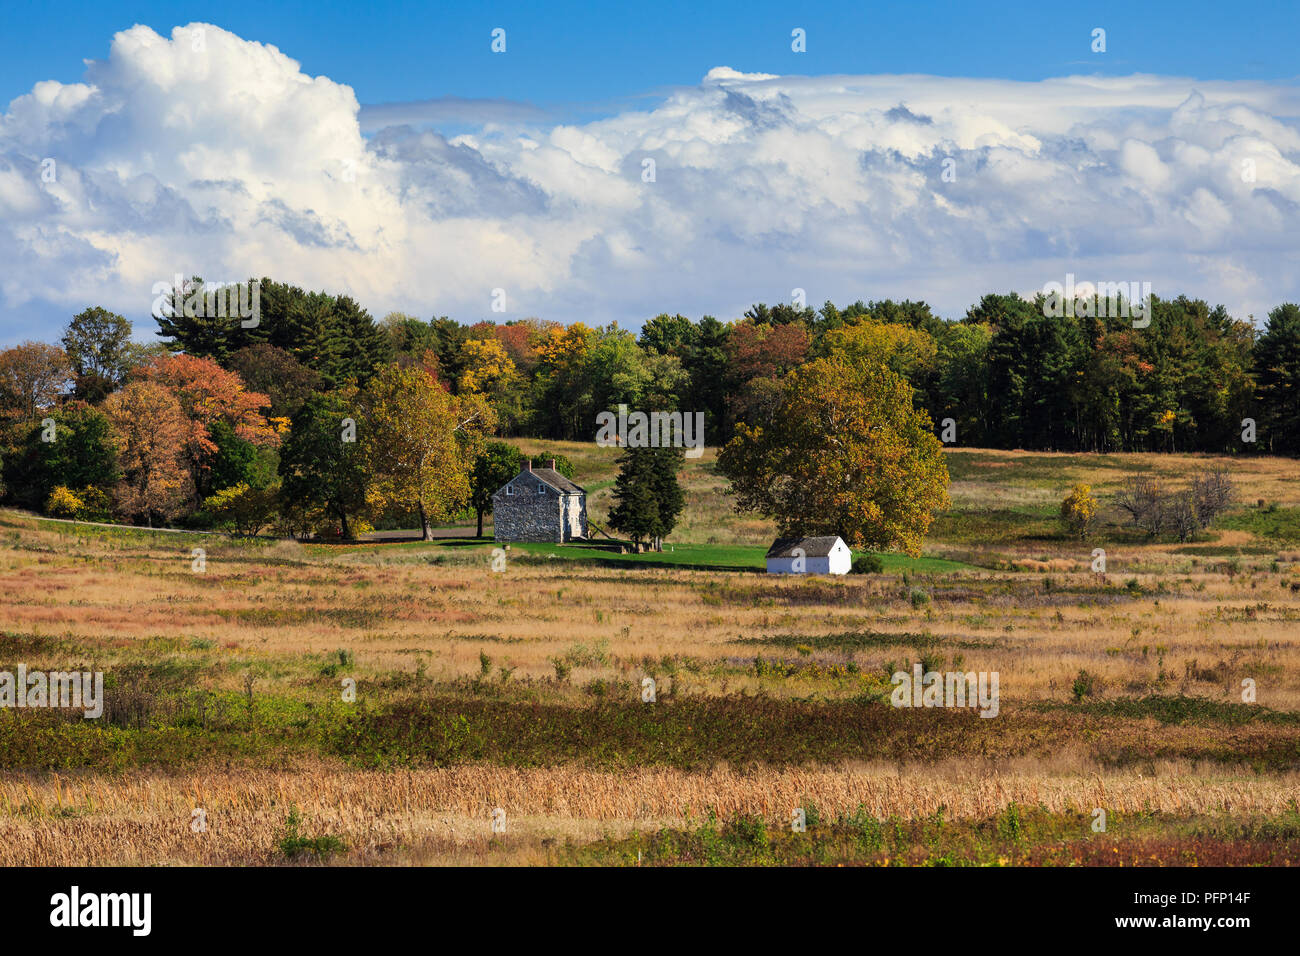 Eine vollständige Herbst Landschaft Big Sky, Licht und Schatten, offenen Feldern, dichten Bäumen bis zum Horizont und, die alle von einem alten Steinhaus verankert. Stockfoto